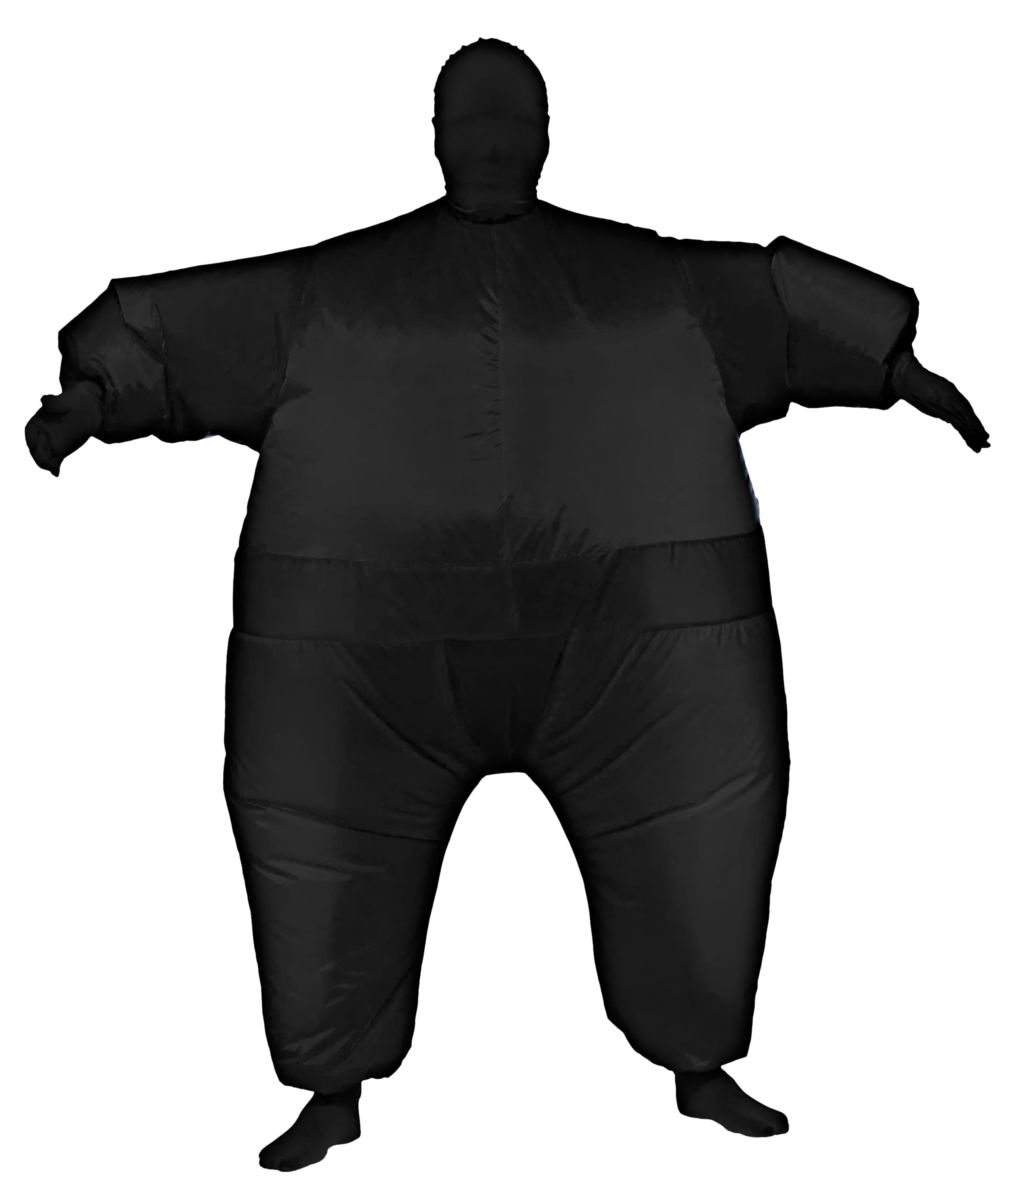 Adult Black Inflatable Costume